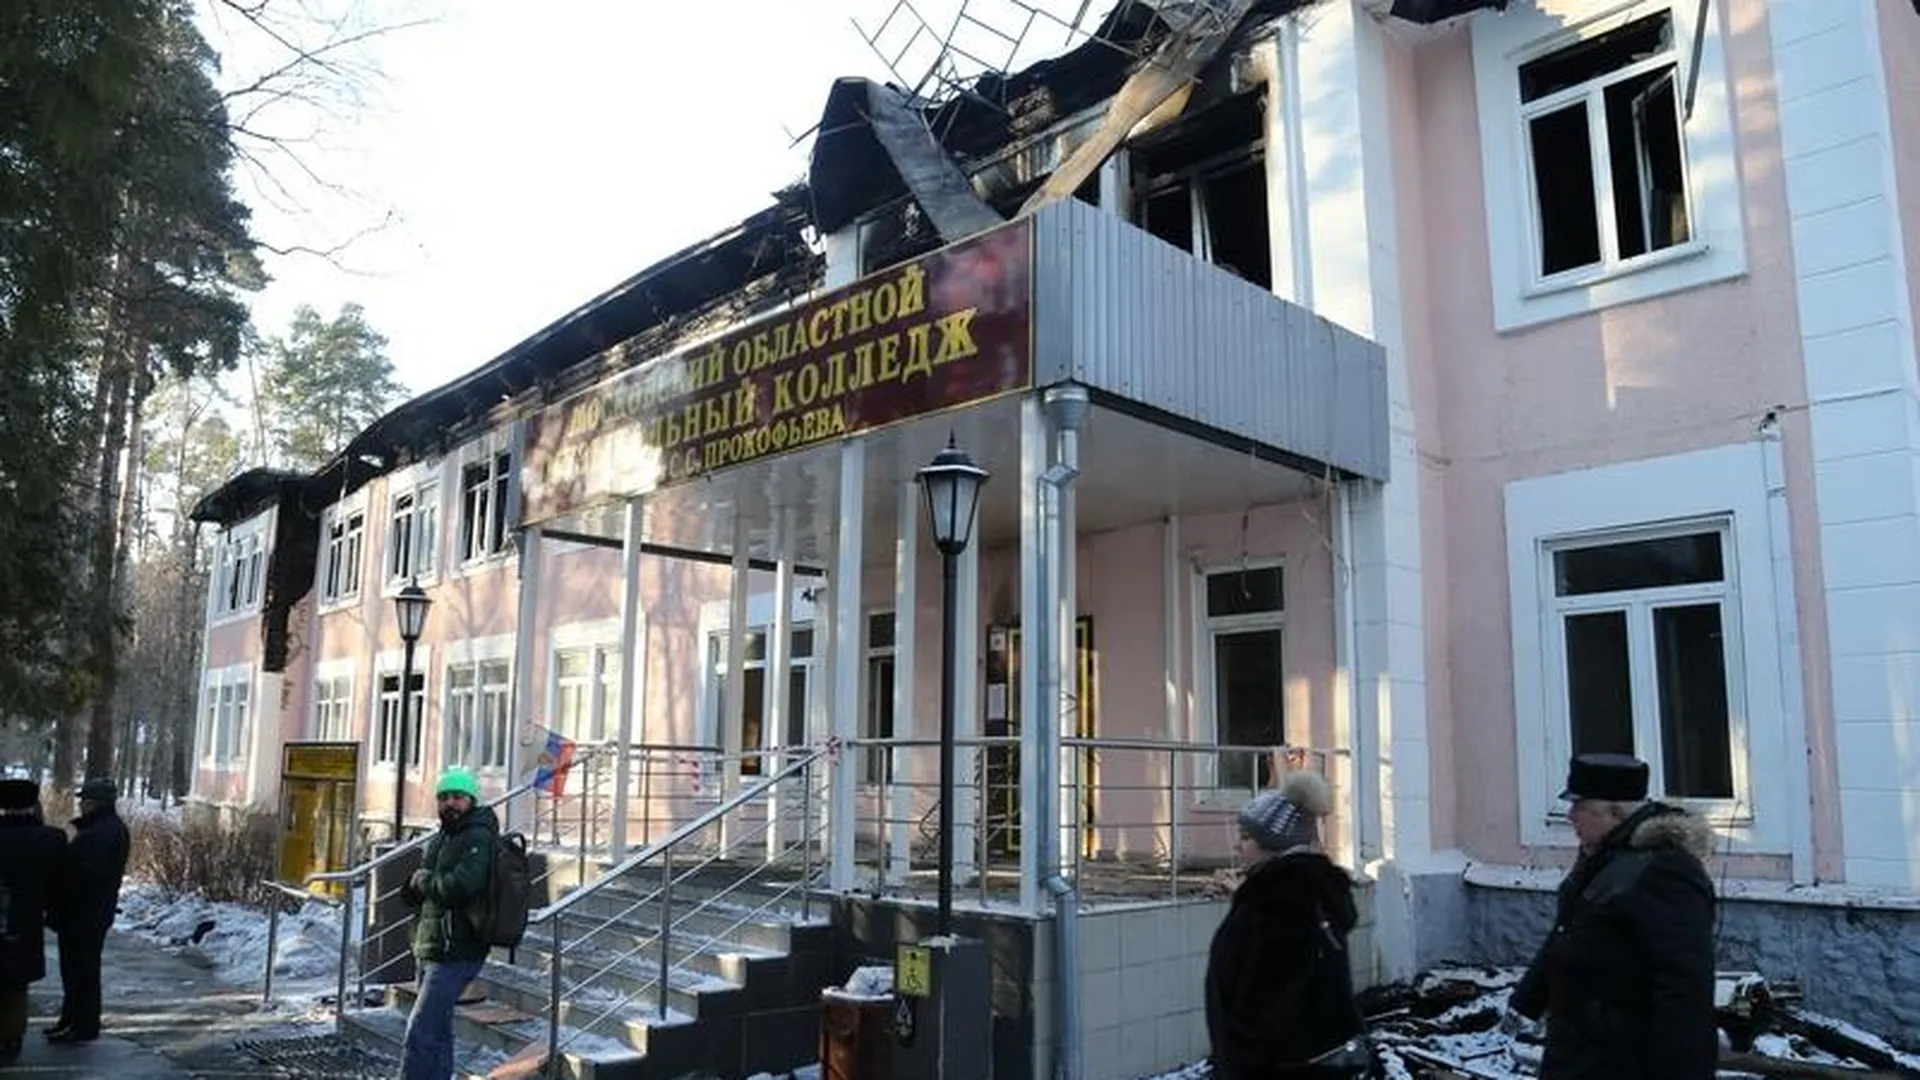 Названа причина пожара в музыкальном колледже в Пушкино